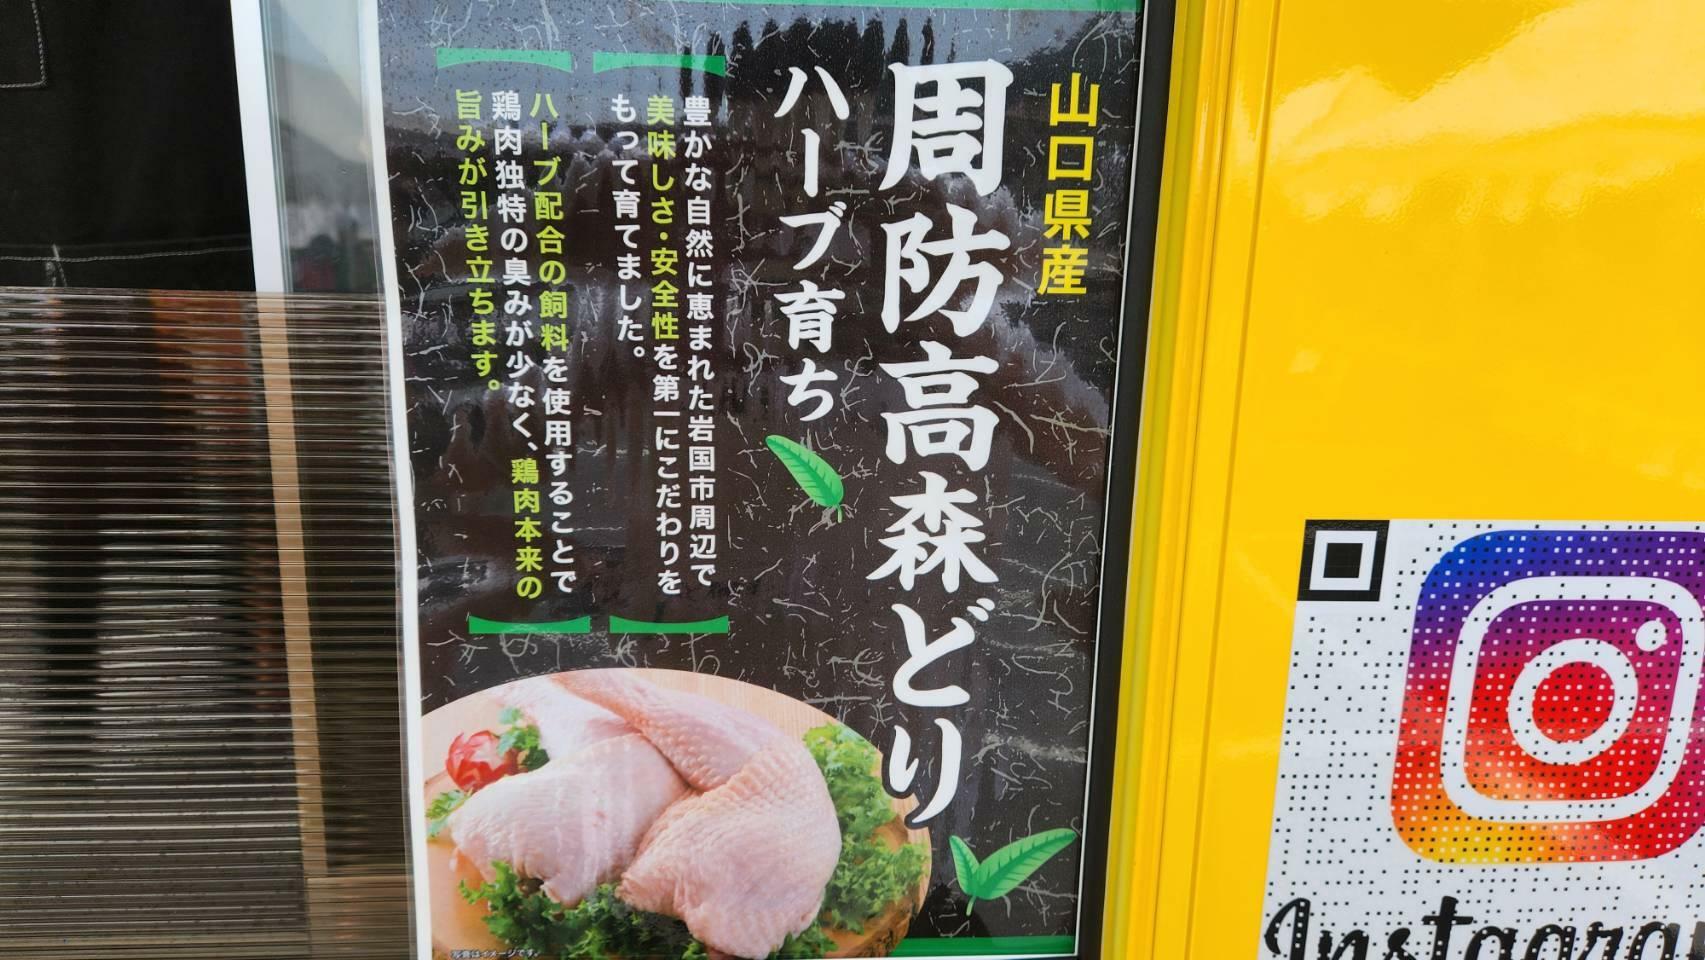 から揚げに使われている鶏肉は、山口県産の周防高森どりが使われている。素材にもこだわりがあるのが、IWA-KARAの魅力。